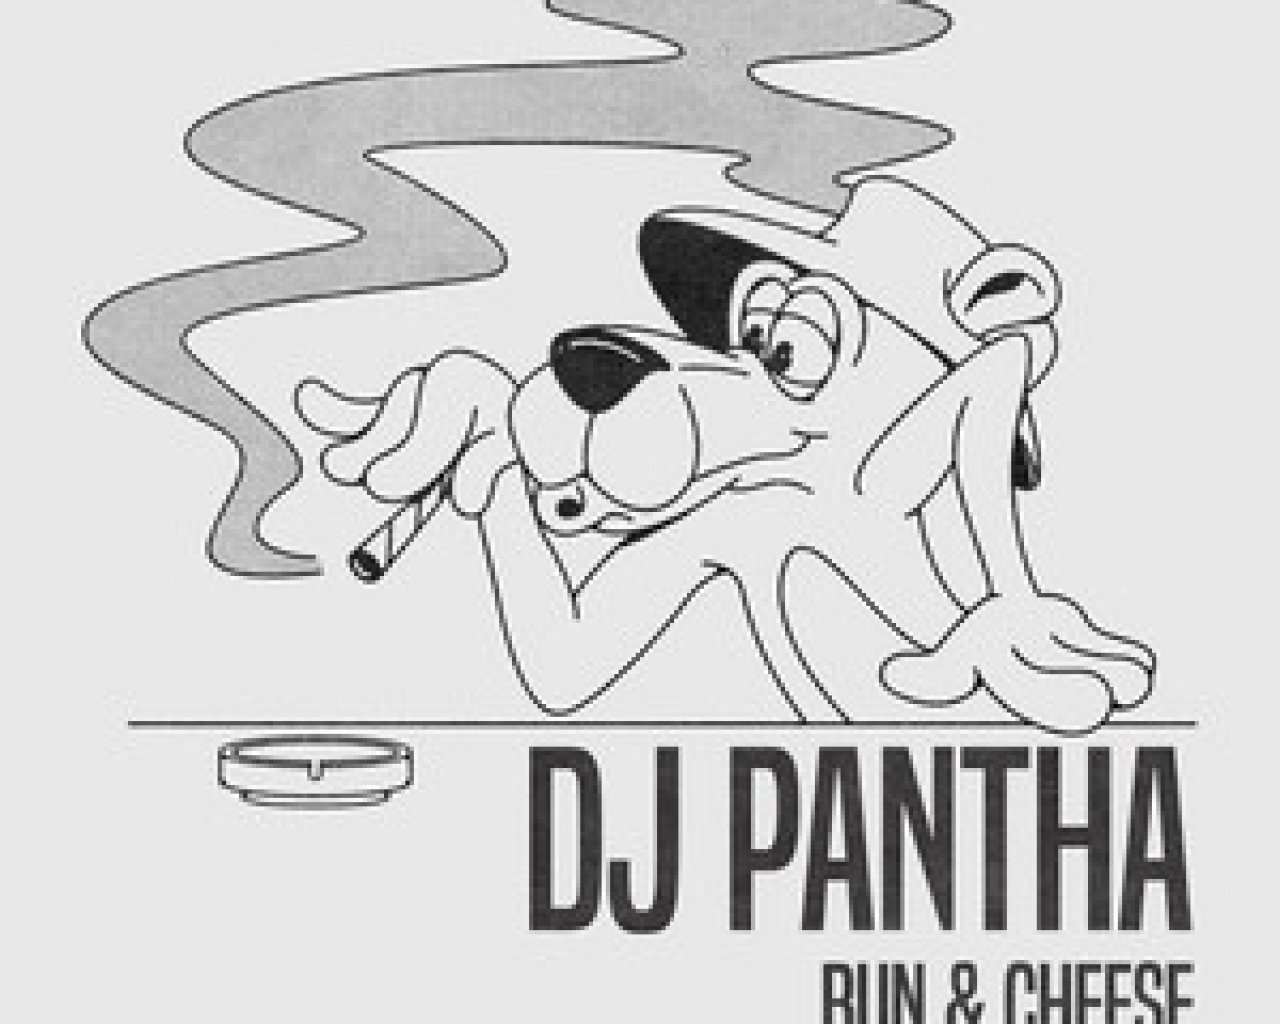 DJ Pantha